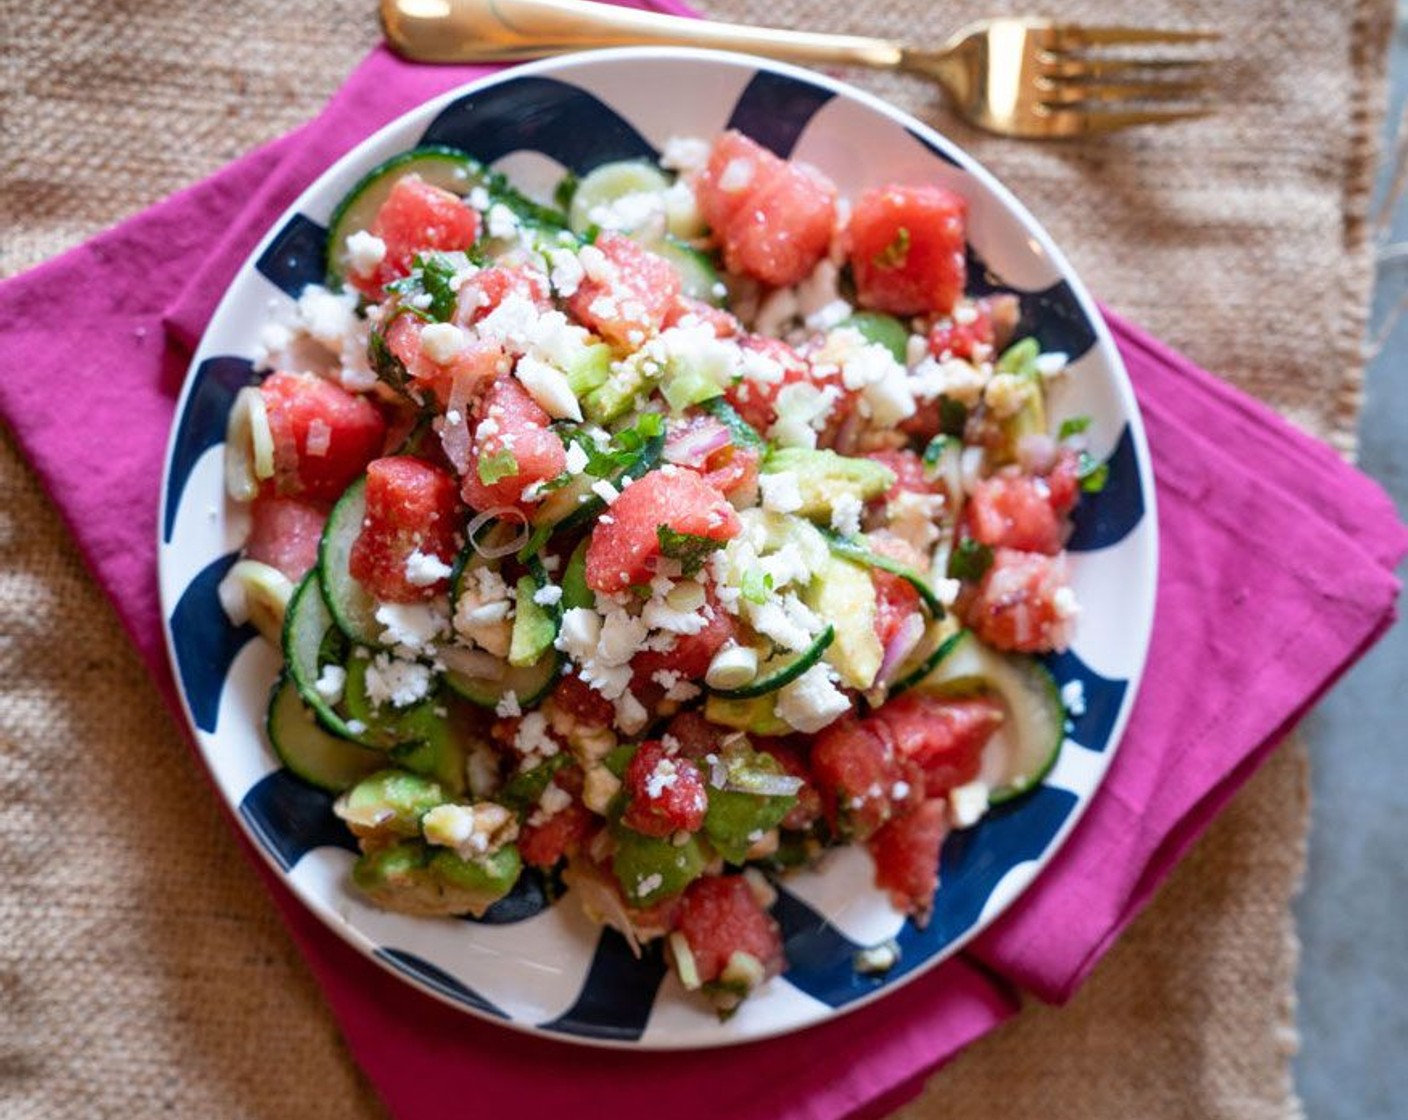 Watermelon Feta Mint Salad